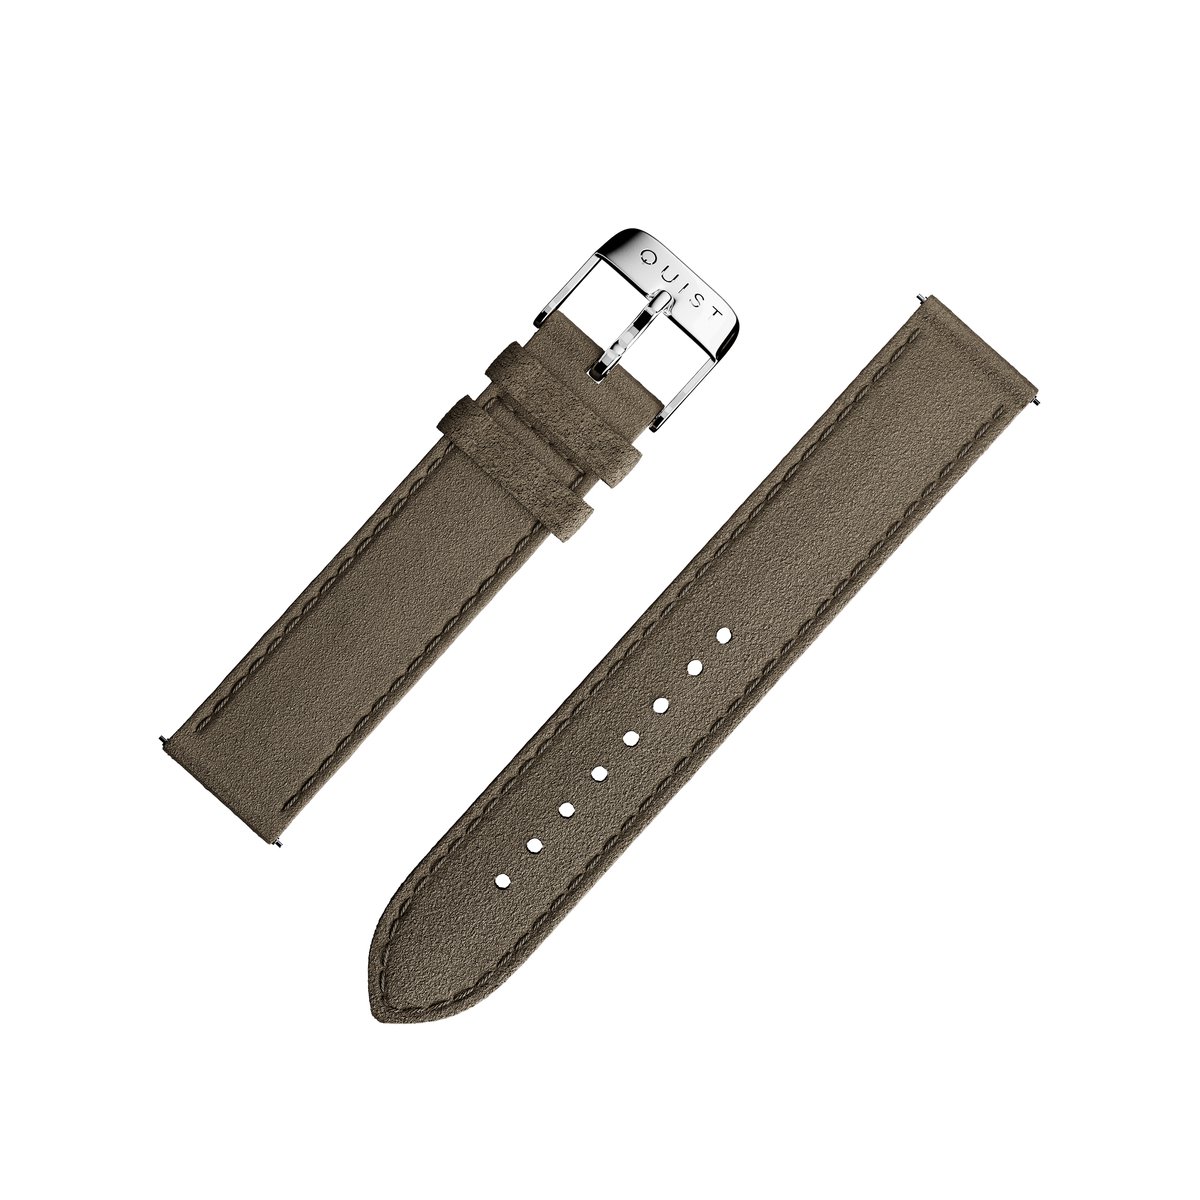 QUIST - horlogebandje - donkerbruin suede - zilveren sluiting - 18mm